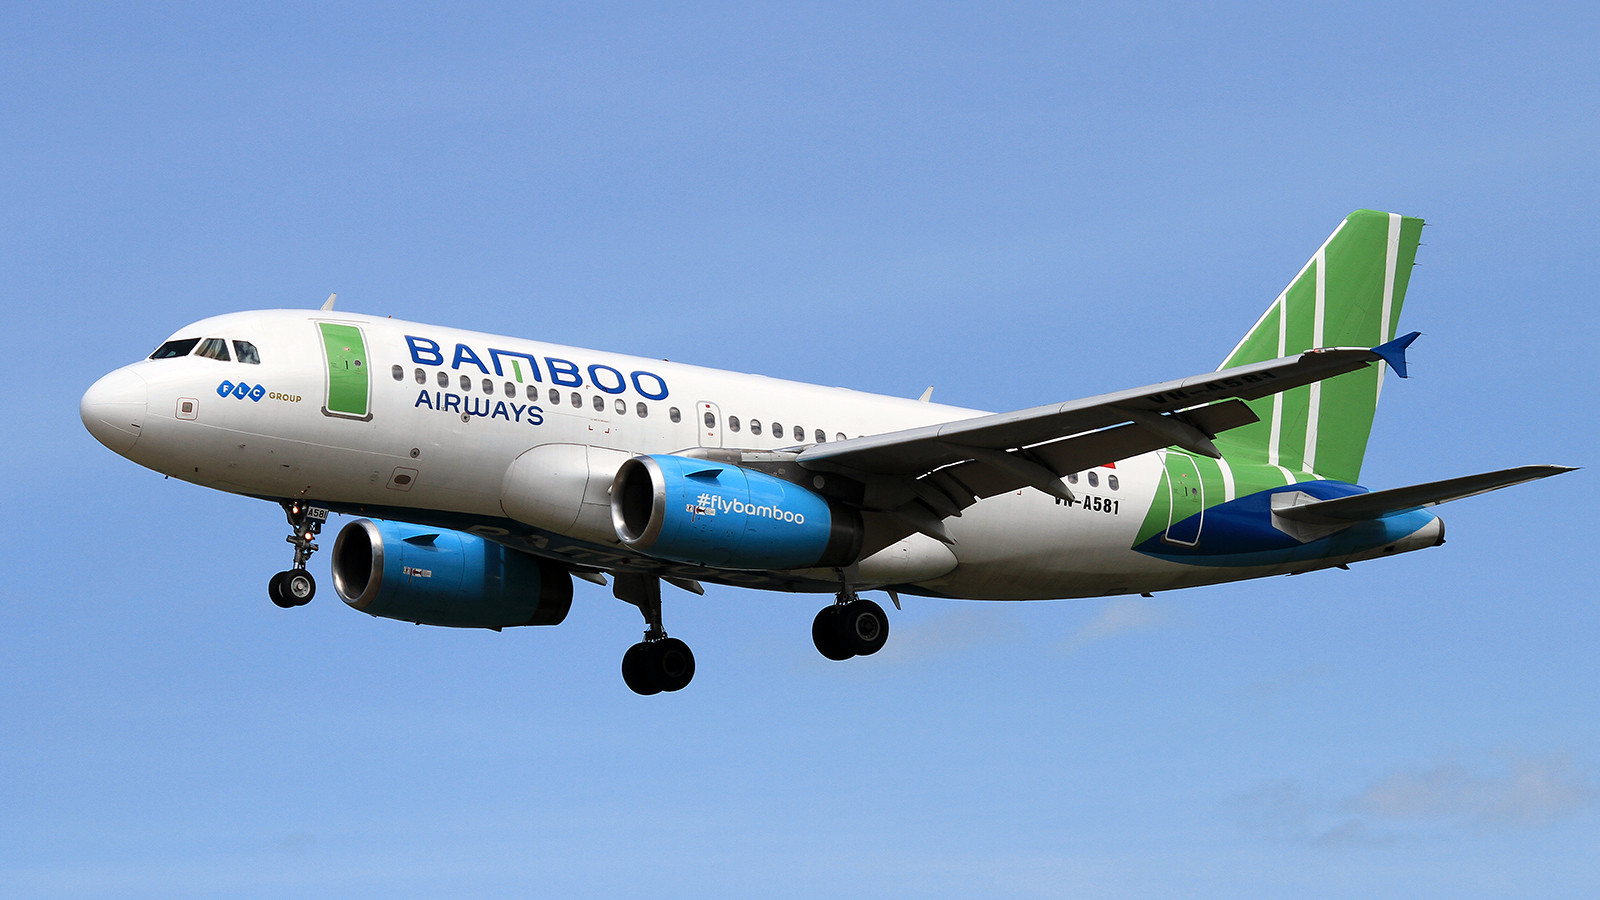 “Đổi gió” cùng Bamboo Airways với ưu đãi “Mua 1 tặng 1” chặng Cần Thơ - Hải Phòng/Đà Nẵng/Quy Nhơn